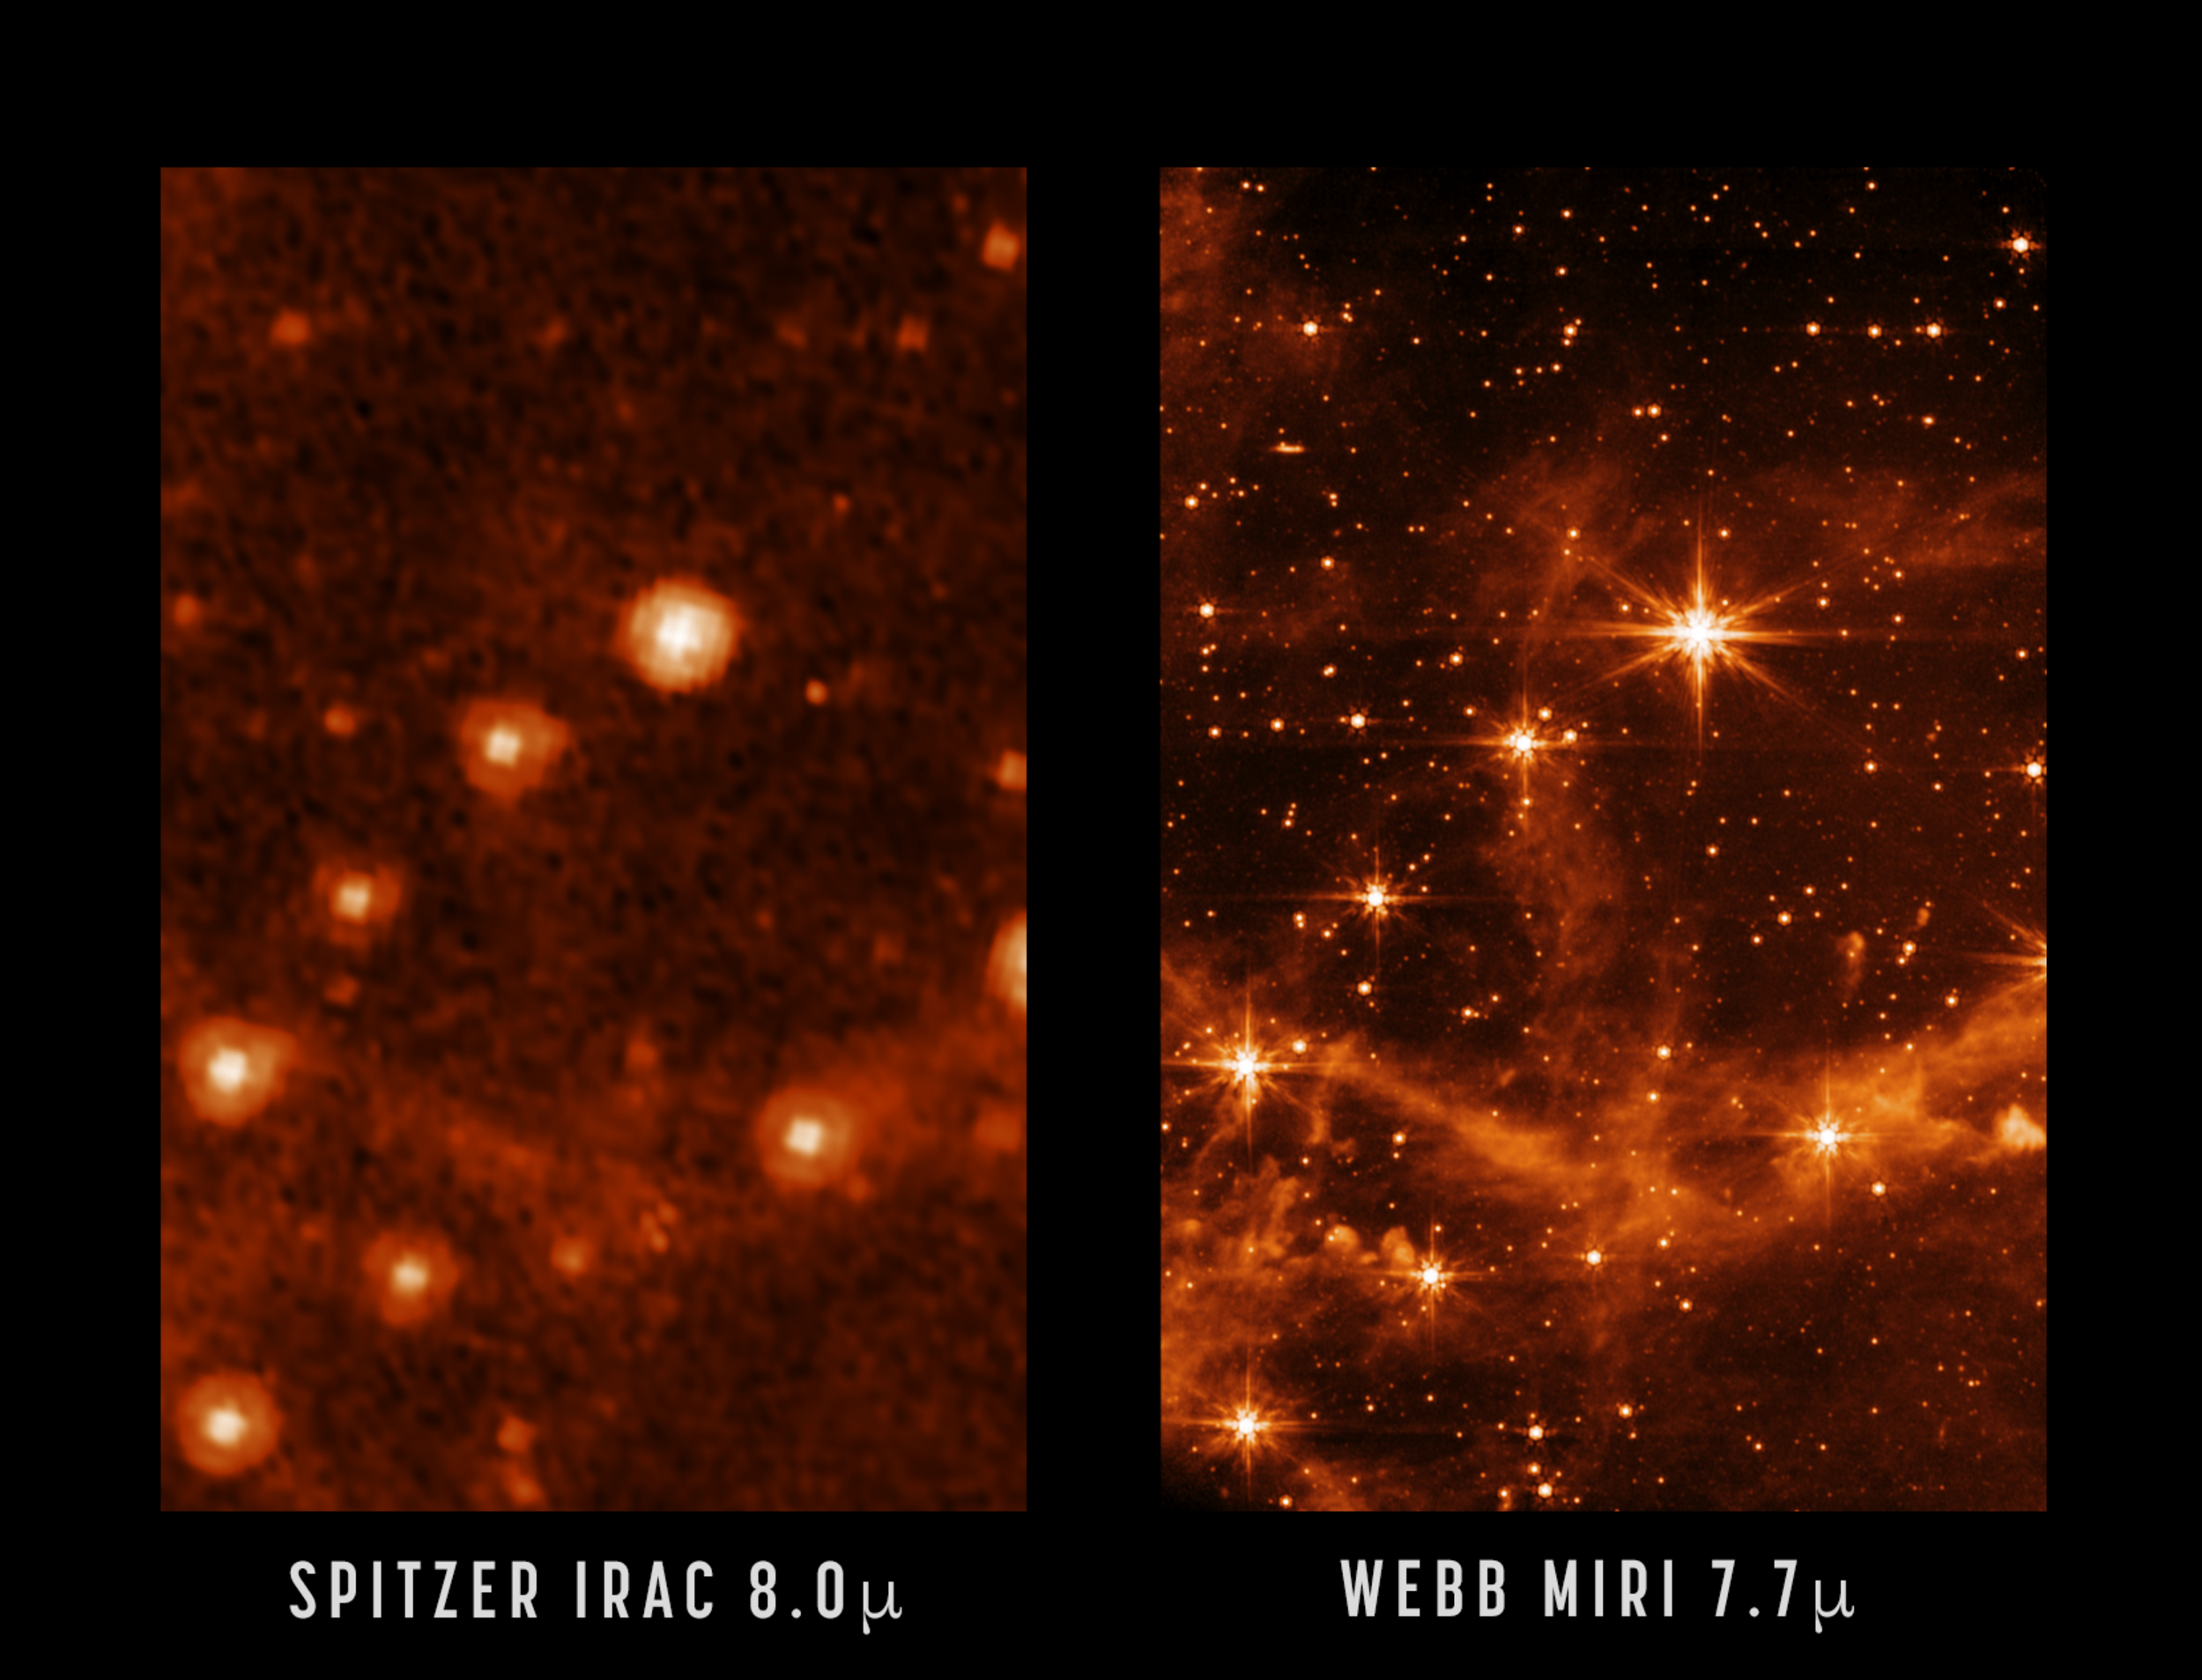 El primer test del telescopio James Webb marca el principio de una nueva era de descubrimientos